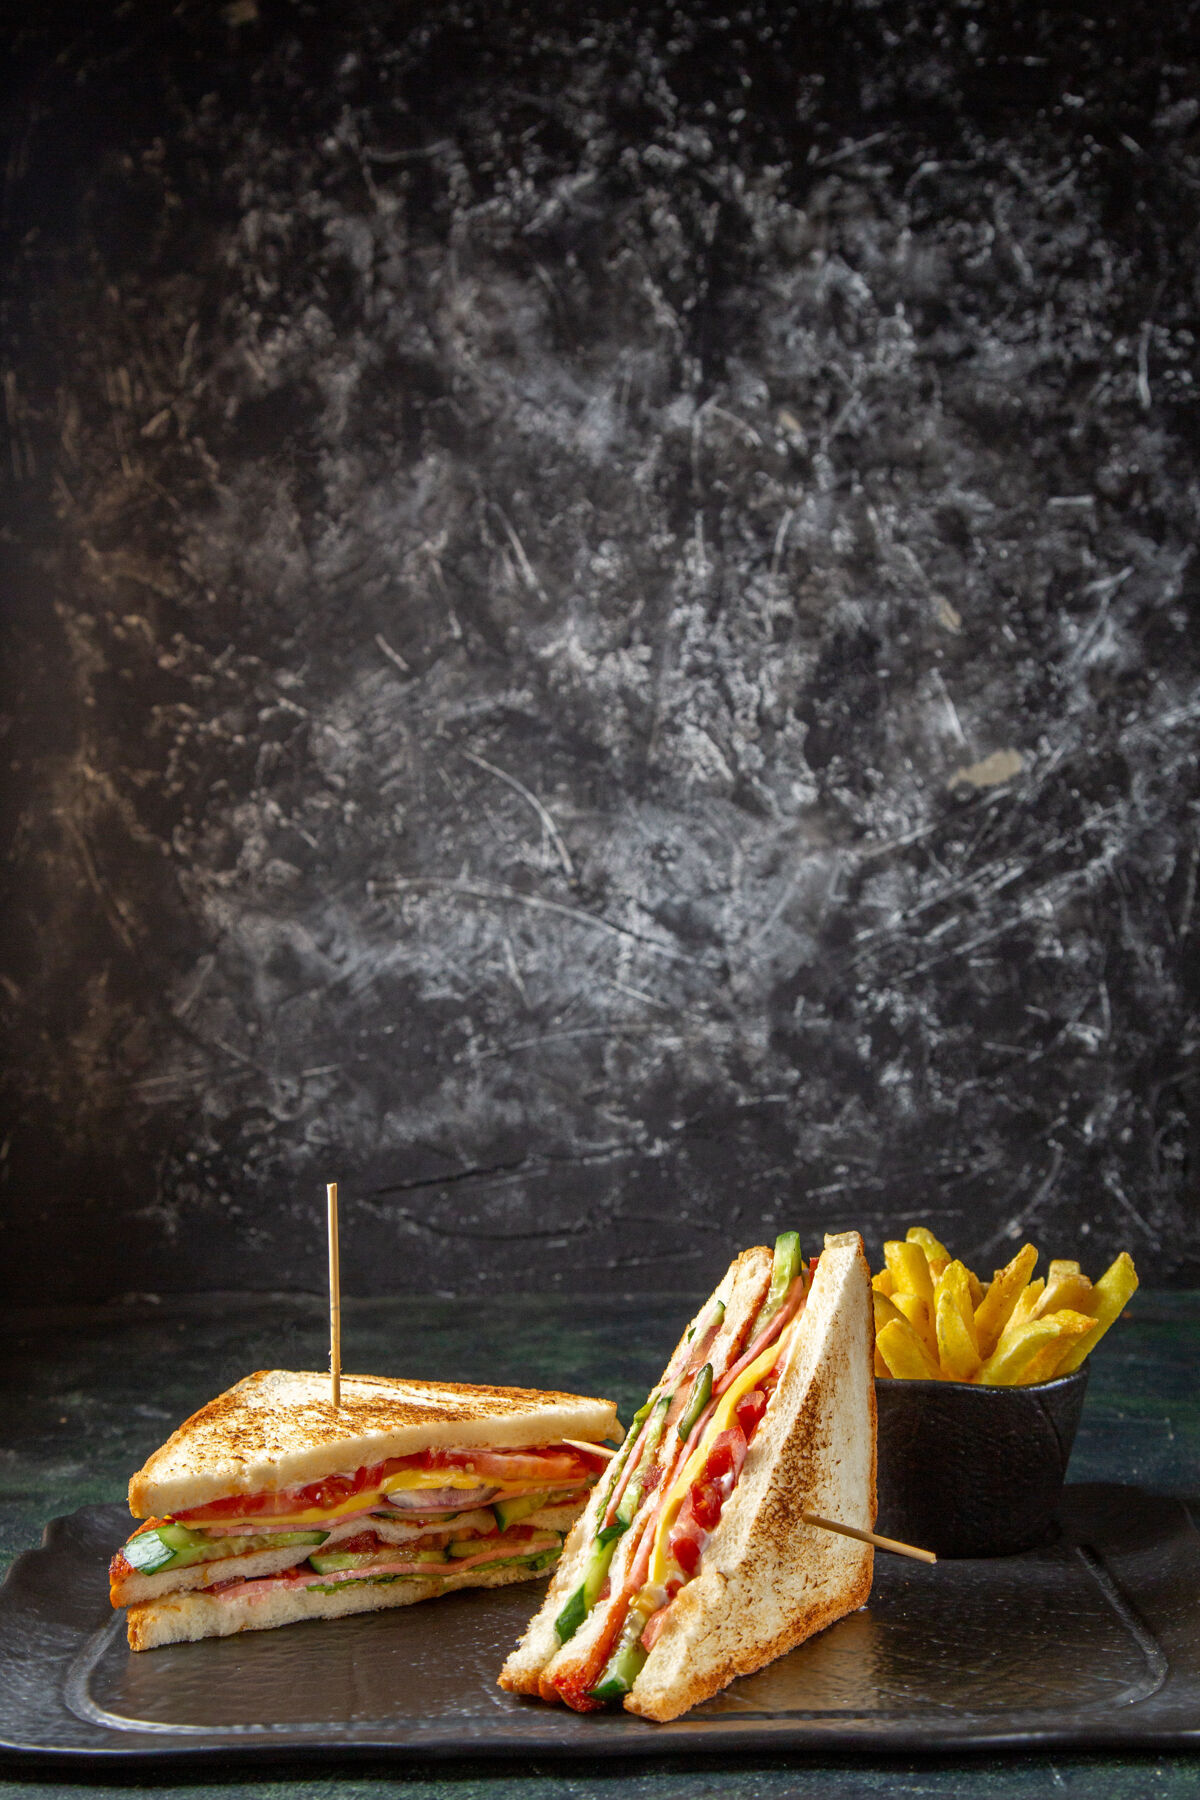 汉堡正面是美味的火腿三明治和炸薯条深色的表面烧烤法国面包